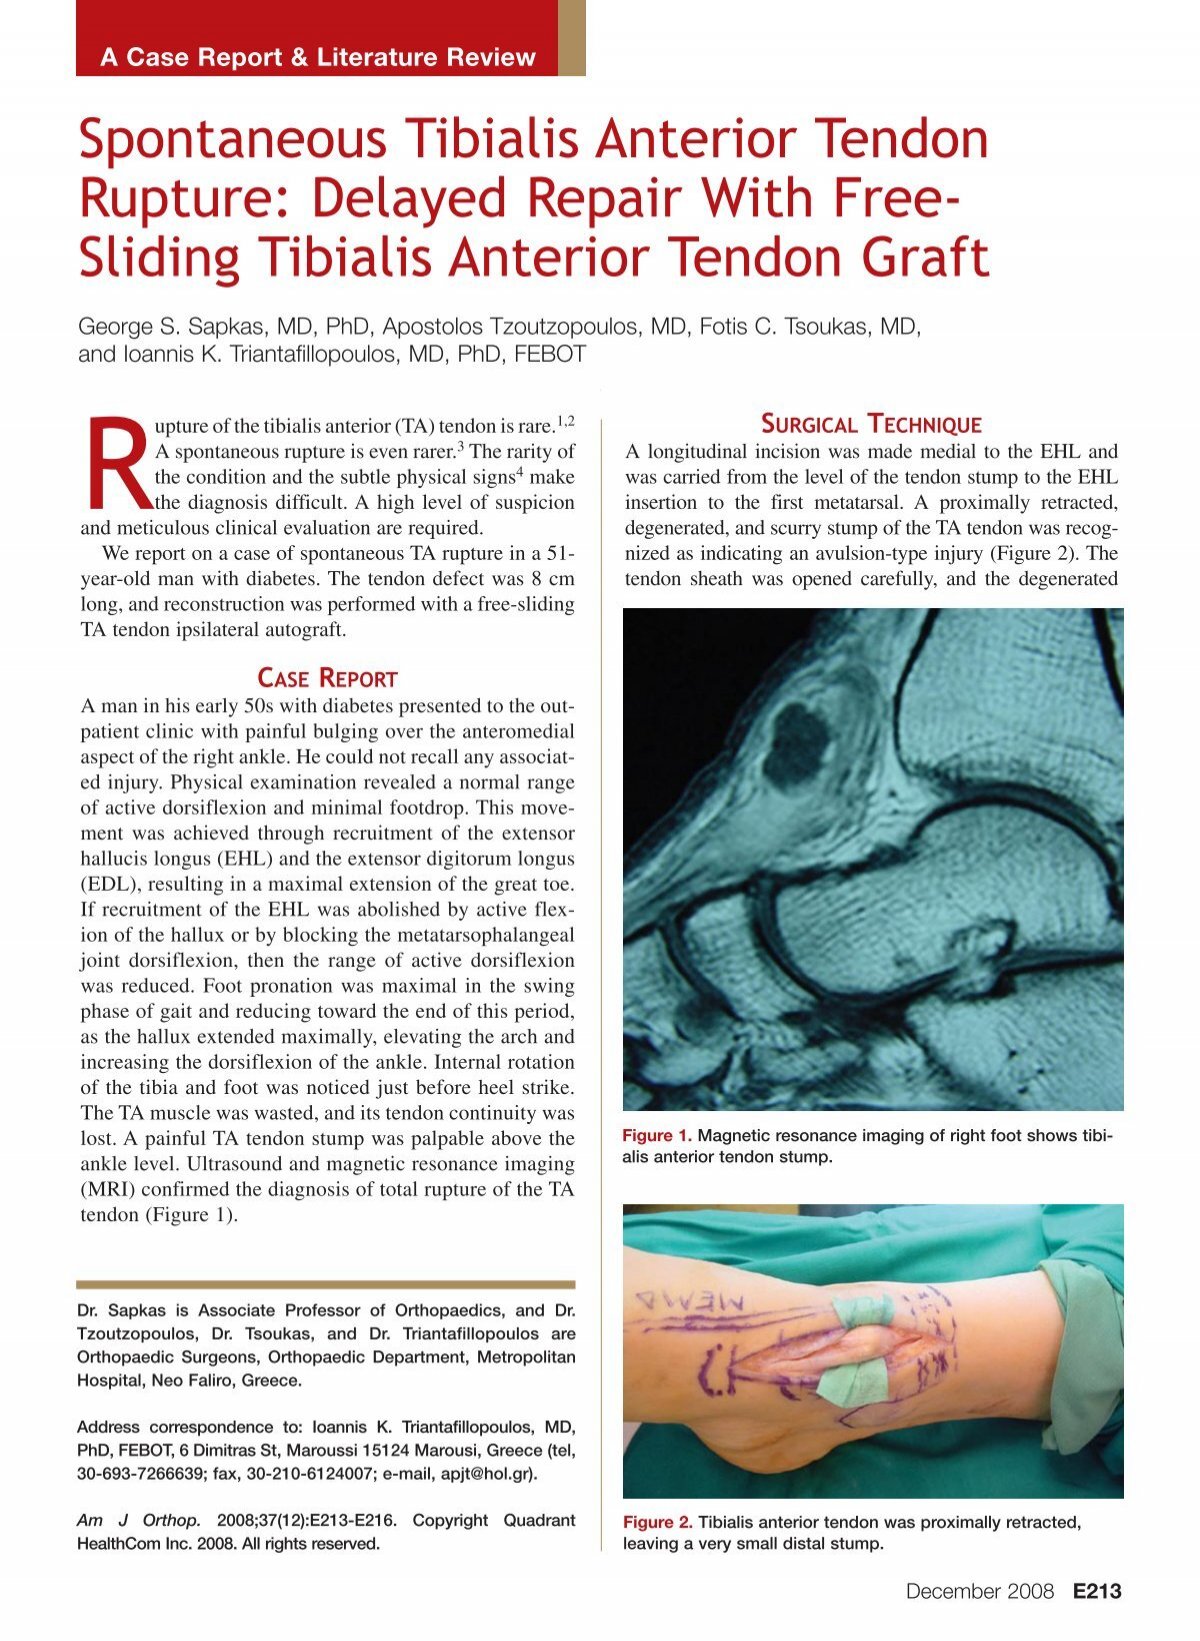 Spontaneous Tibialis Anterior Tendon Rupture Delayed Repair